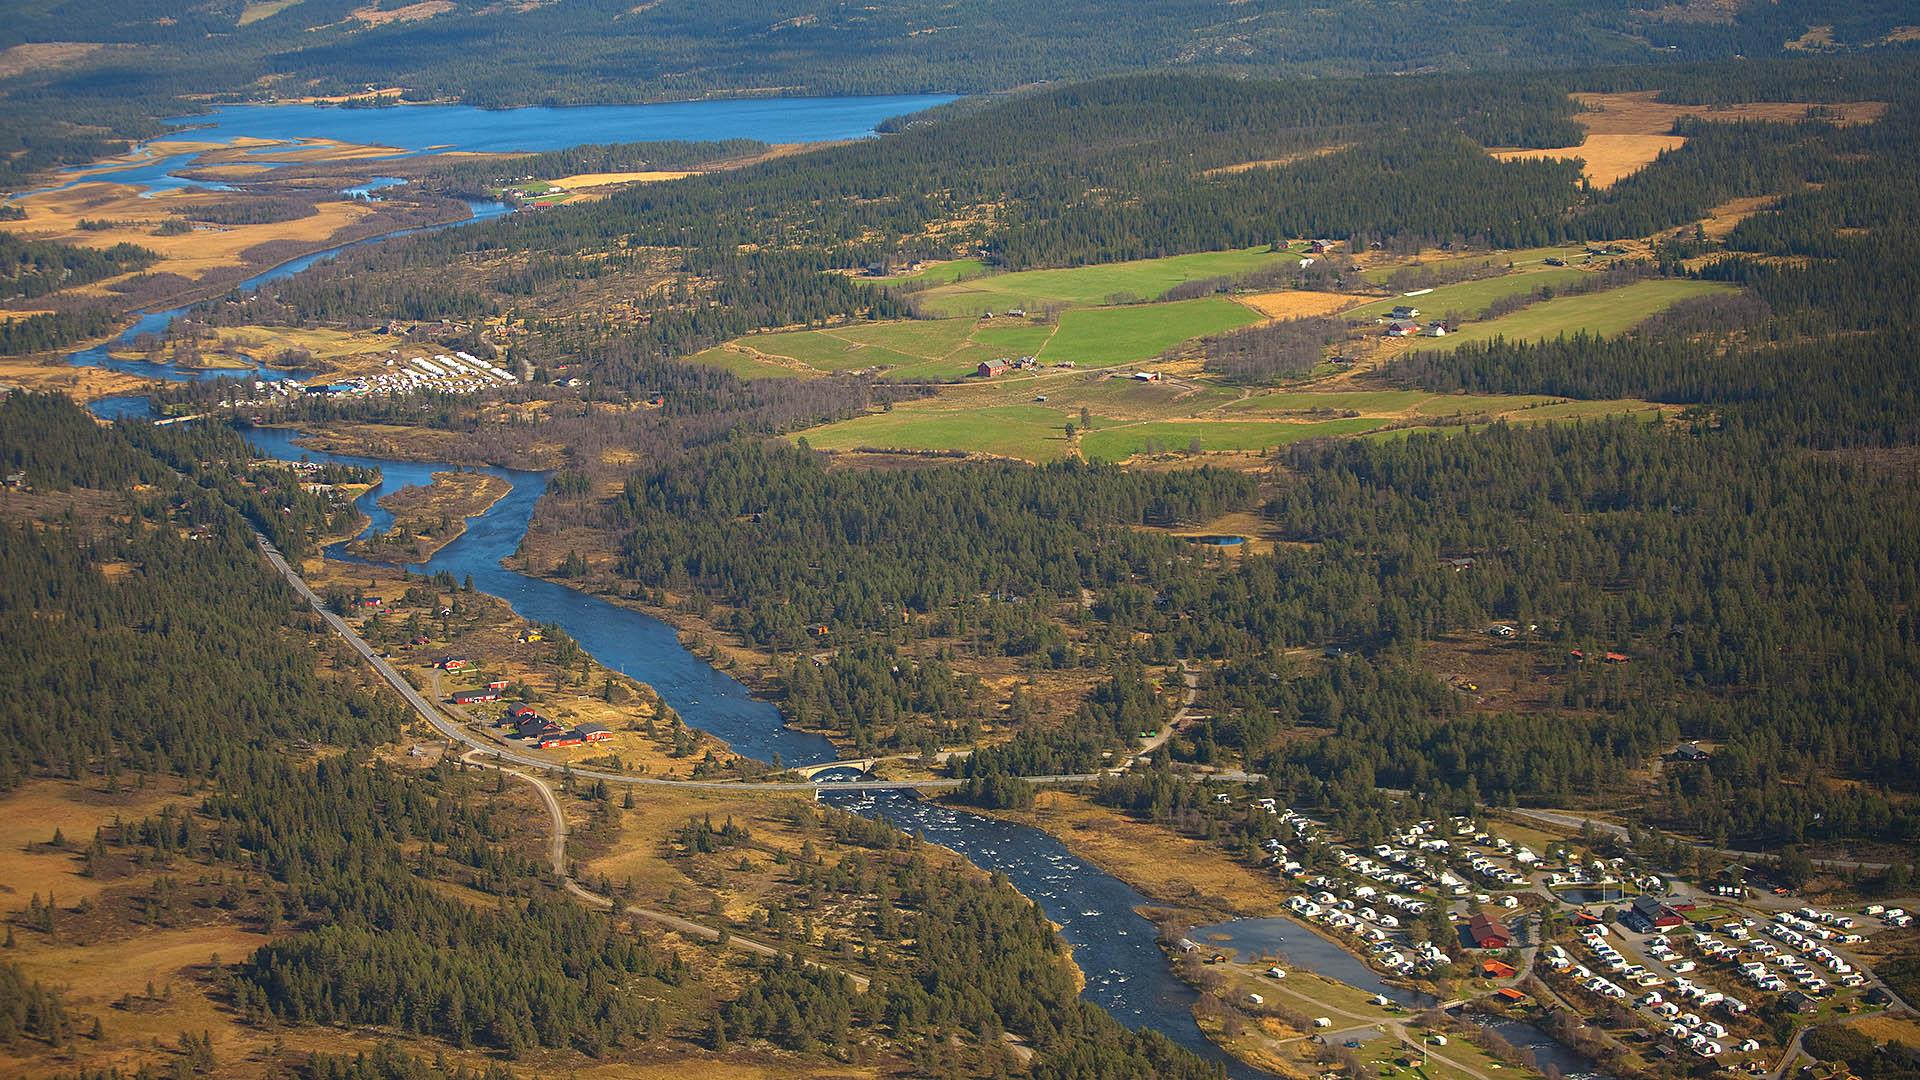 Luftaufnahme eines breiuten Talbodens mit einem Fluss, der an einem Campingplatz, ein paar Waldstücken und ein paar grünen Weiden vorbeifließt. Im Hintergrund ein See. Sommer.